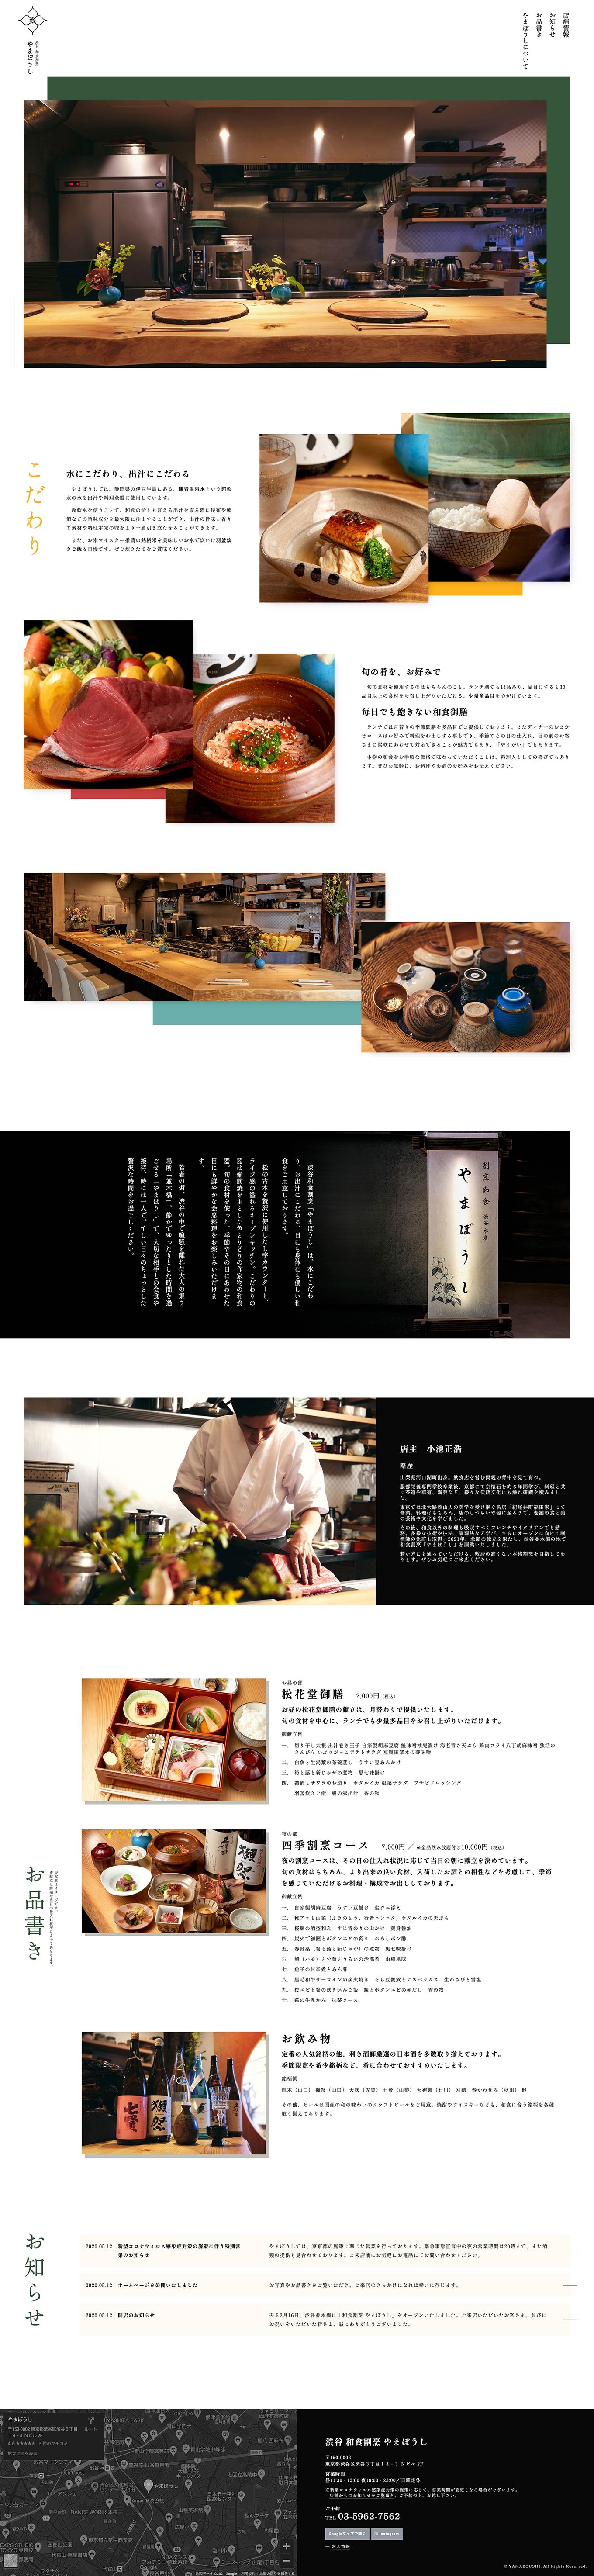 渋谷 和食割烹やまぼうし様のウェブサイトを制作しましたスマートフォンの見た目